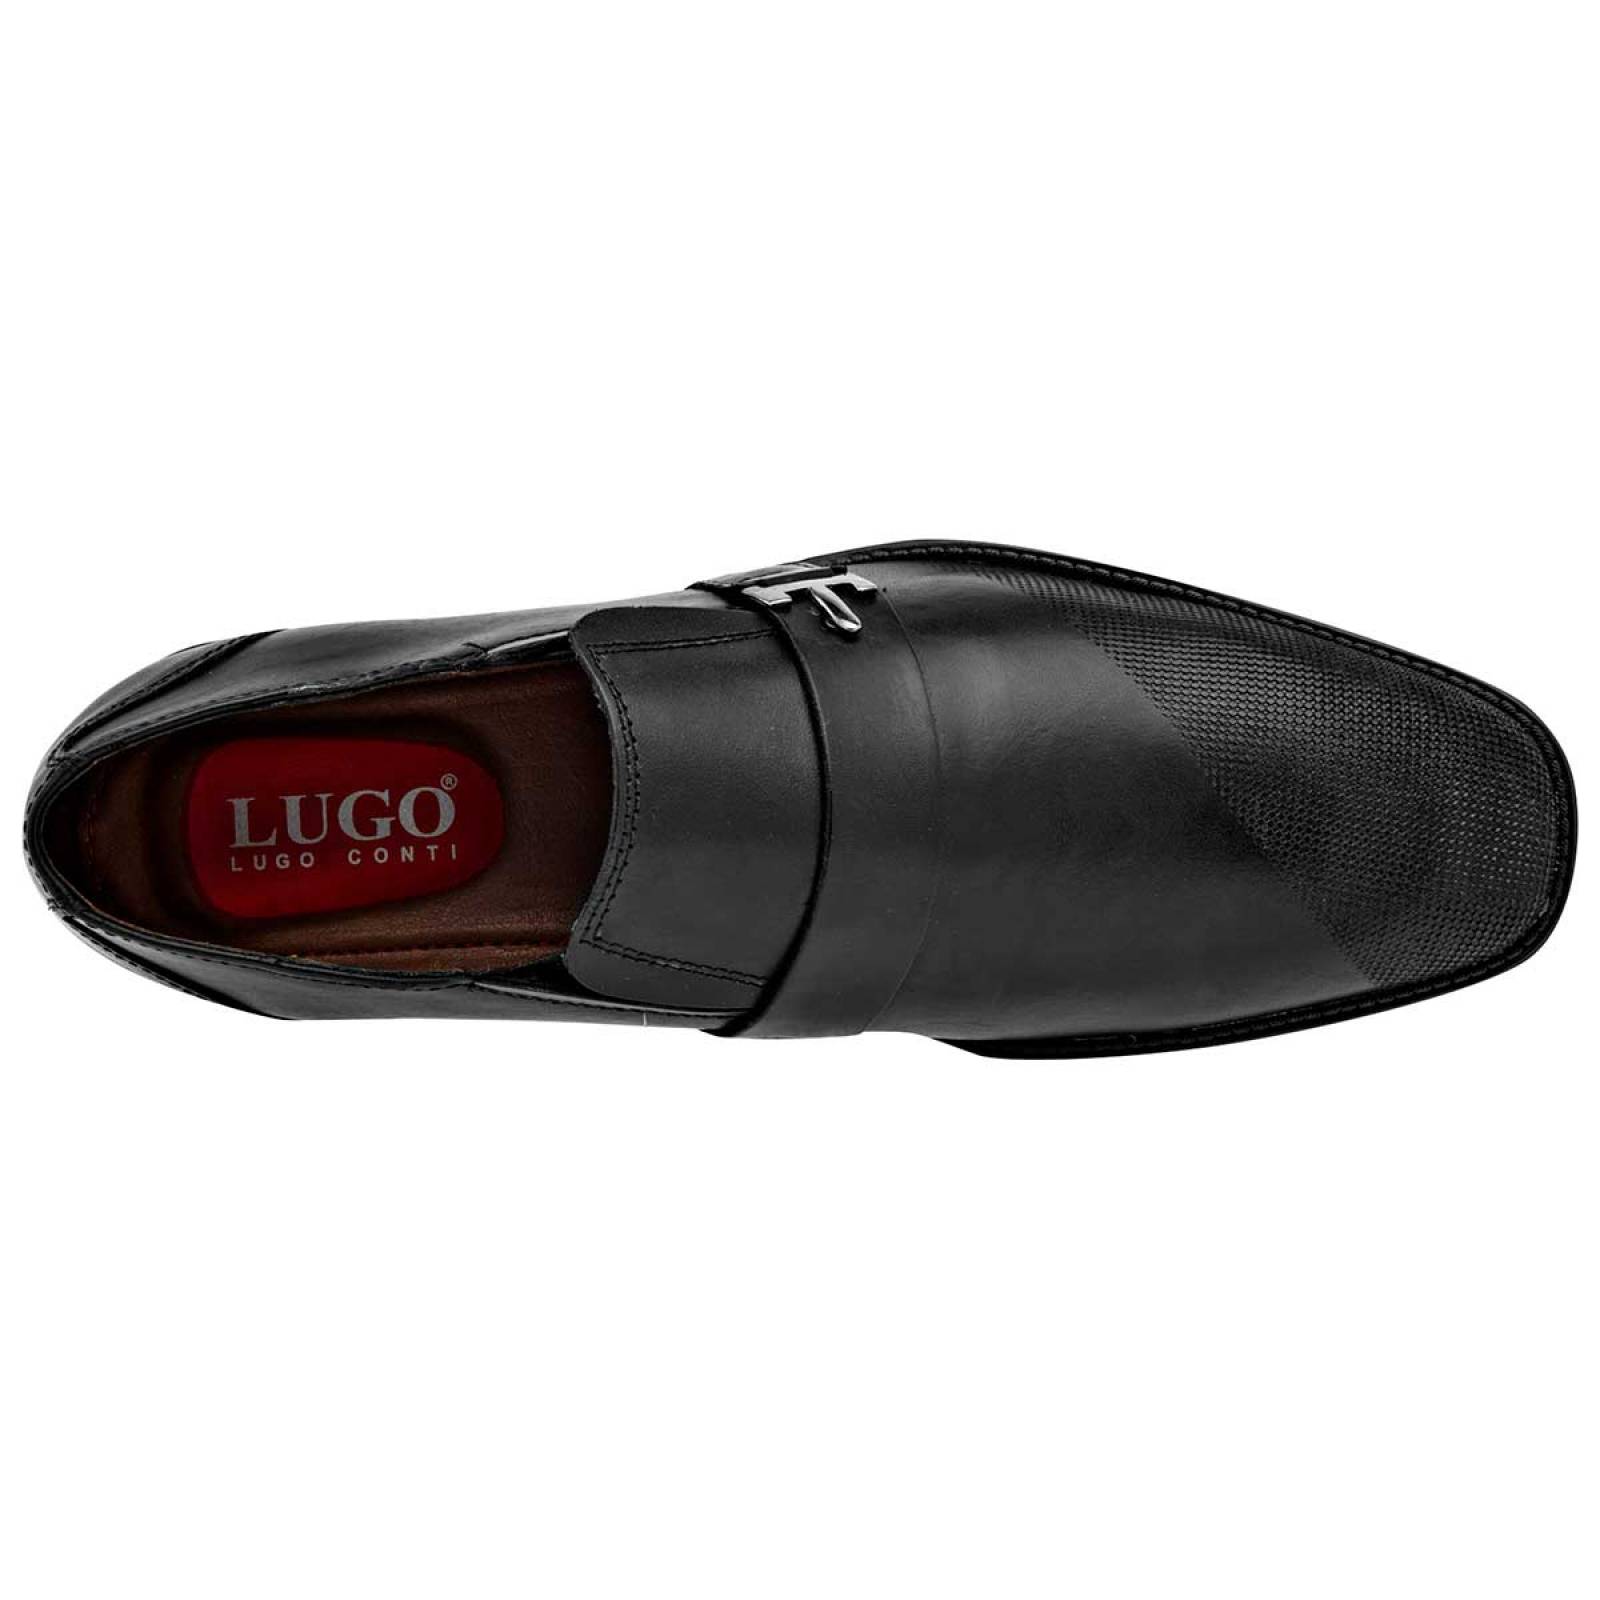 Lugo conti Zapato Hombre Negro